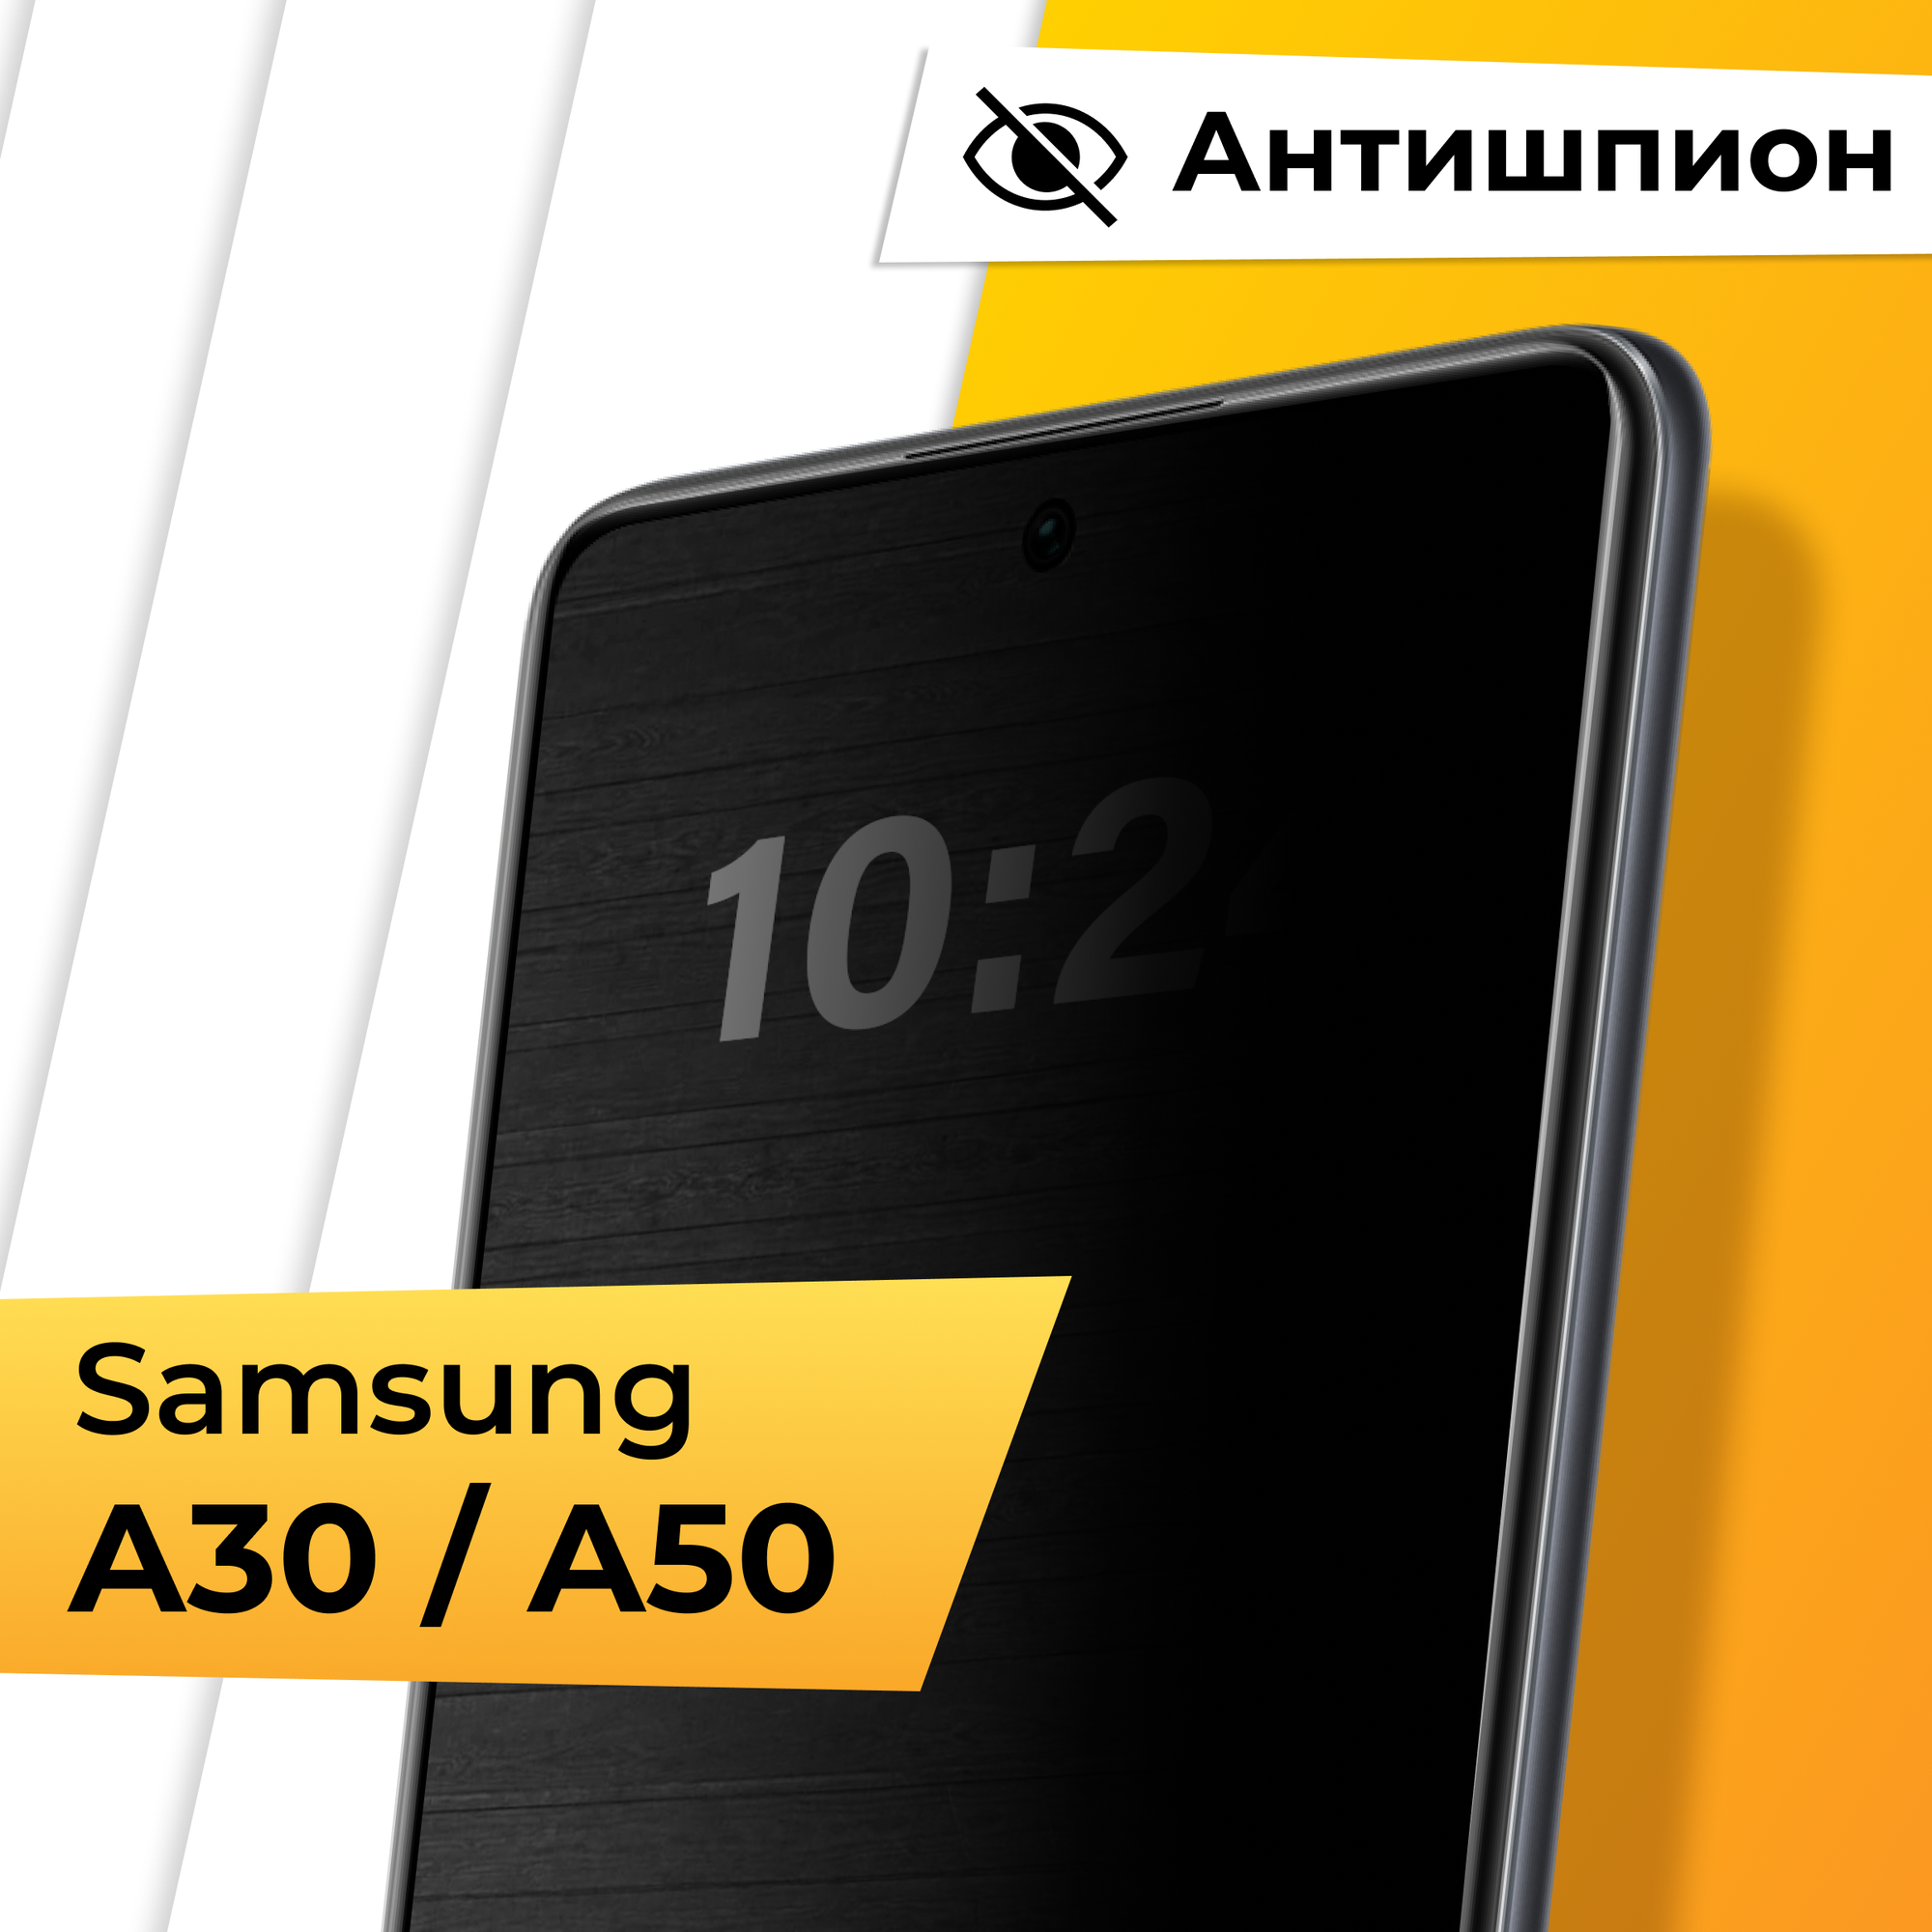 Противоударное защитное стекло Антишпион для телефона Samsung Galaxy A30 и A50 / Закаленное приватное стекло для смартфона Самсунг Галакси А30 и А50